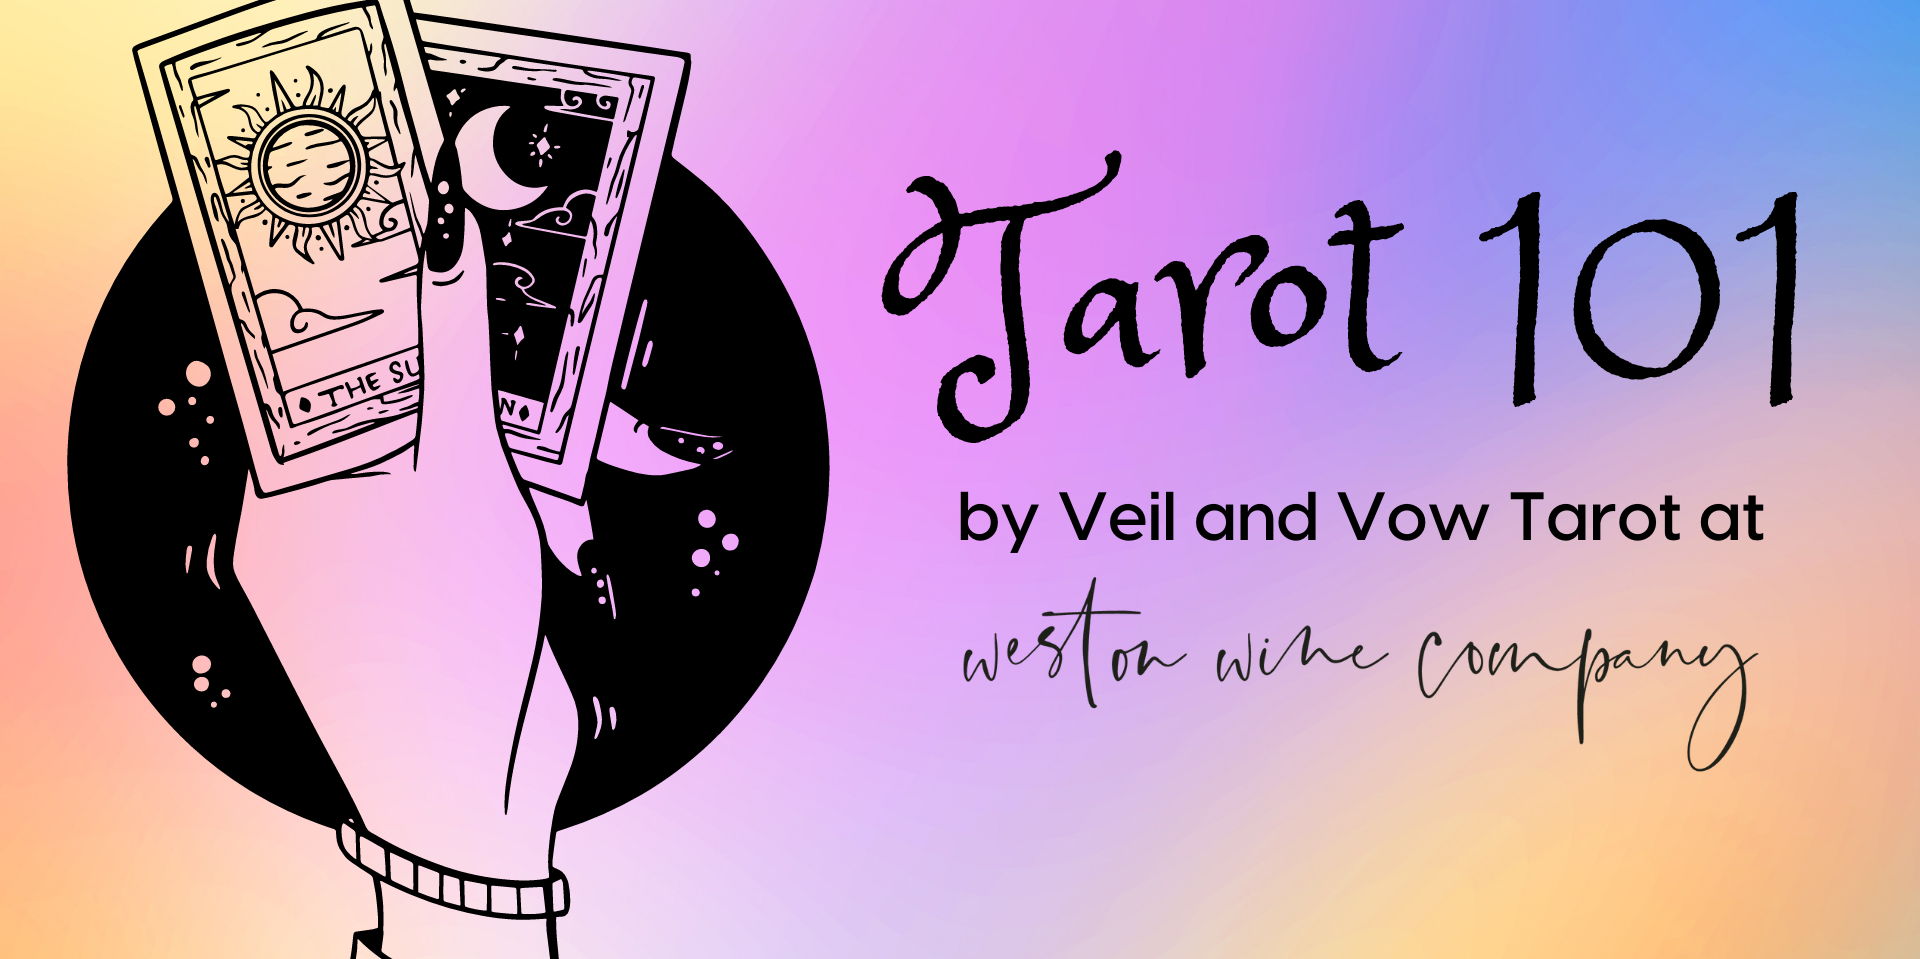 Tarot 101 promotional image